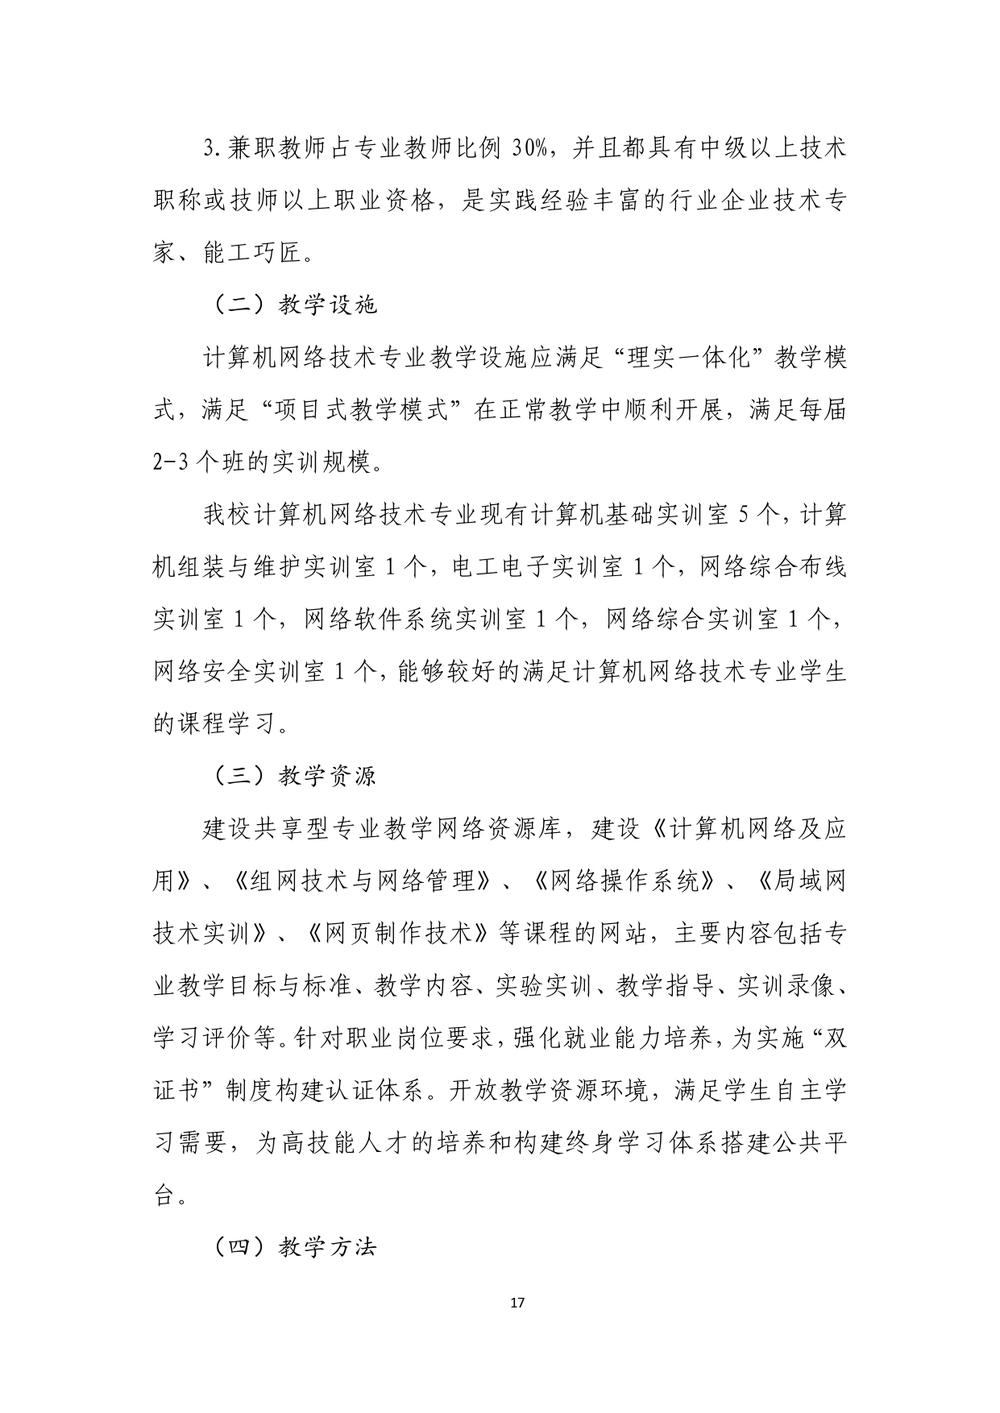 2_郑州市信息技术学校 - 计算机网络技术人才培养方案（09.04）(1)_page-0018